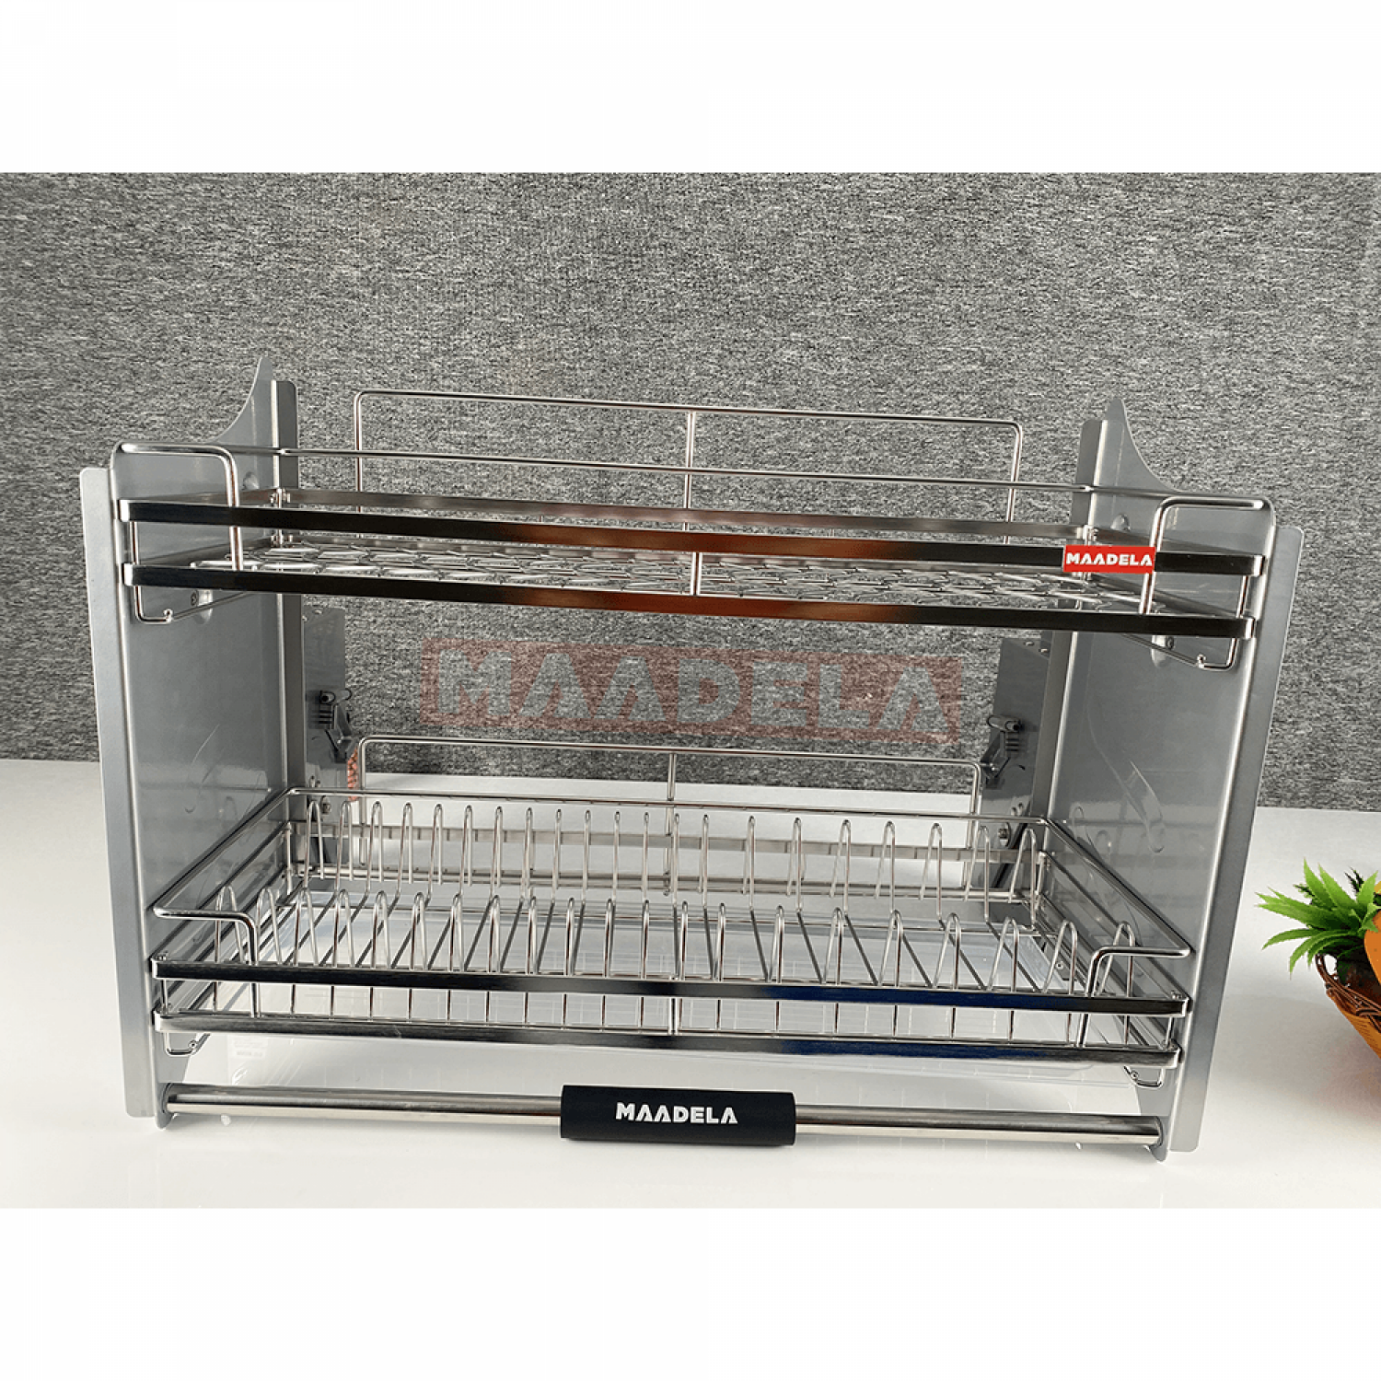 Giá bát đĩa nâng hạ Inox 304 cho tủ bếp trên Maadela MP-G30-2.60 sở hữu thiết kế sang trọng và hiện đại, thích hợp với mọi không gian nhà bếp